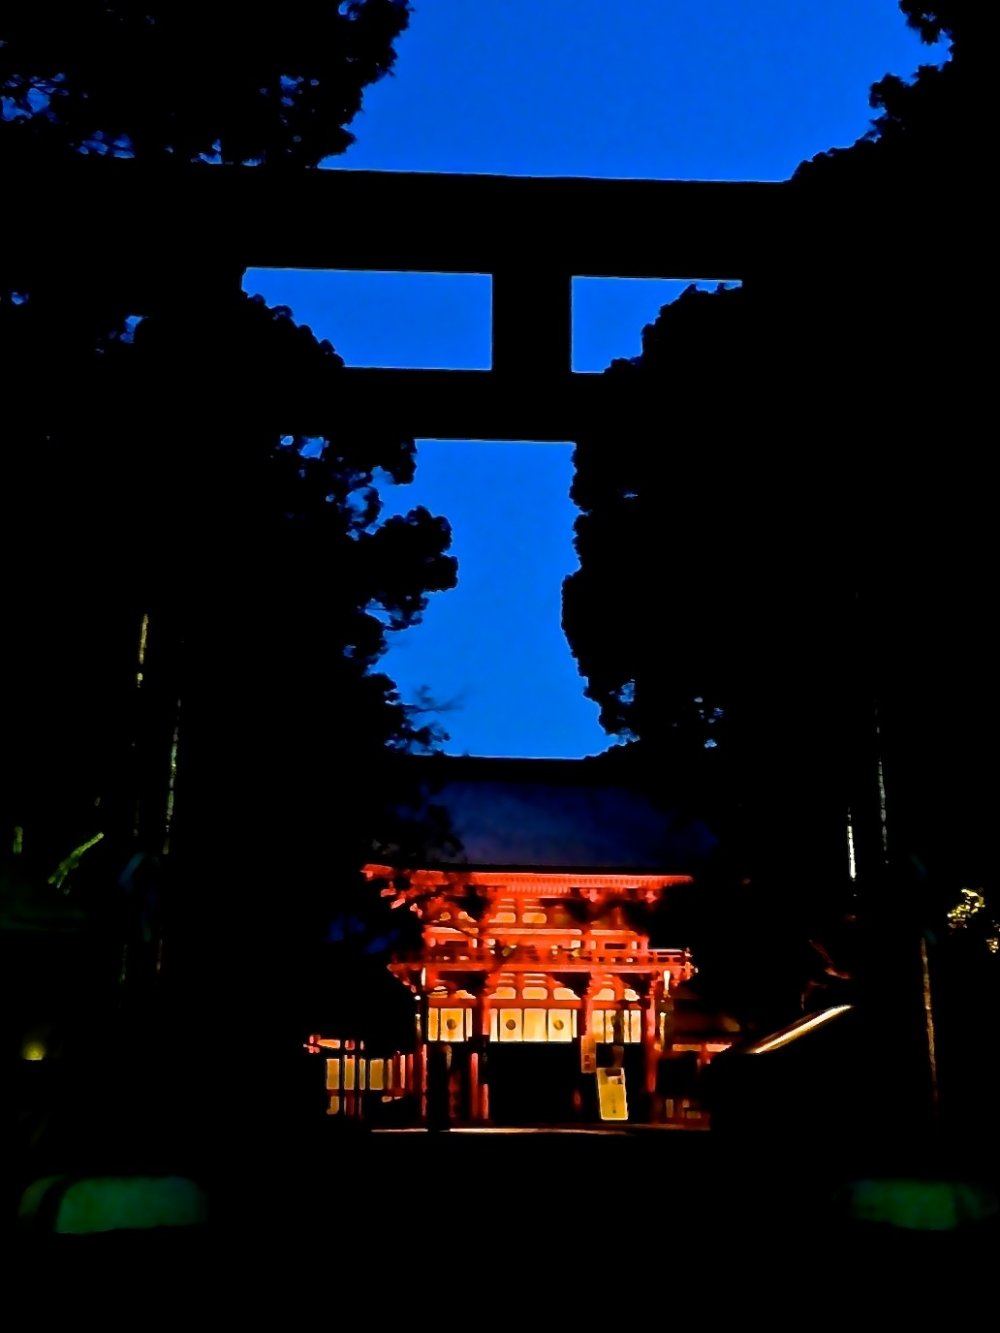 早朝の下鴨神社